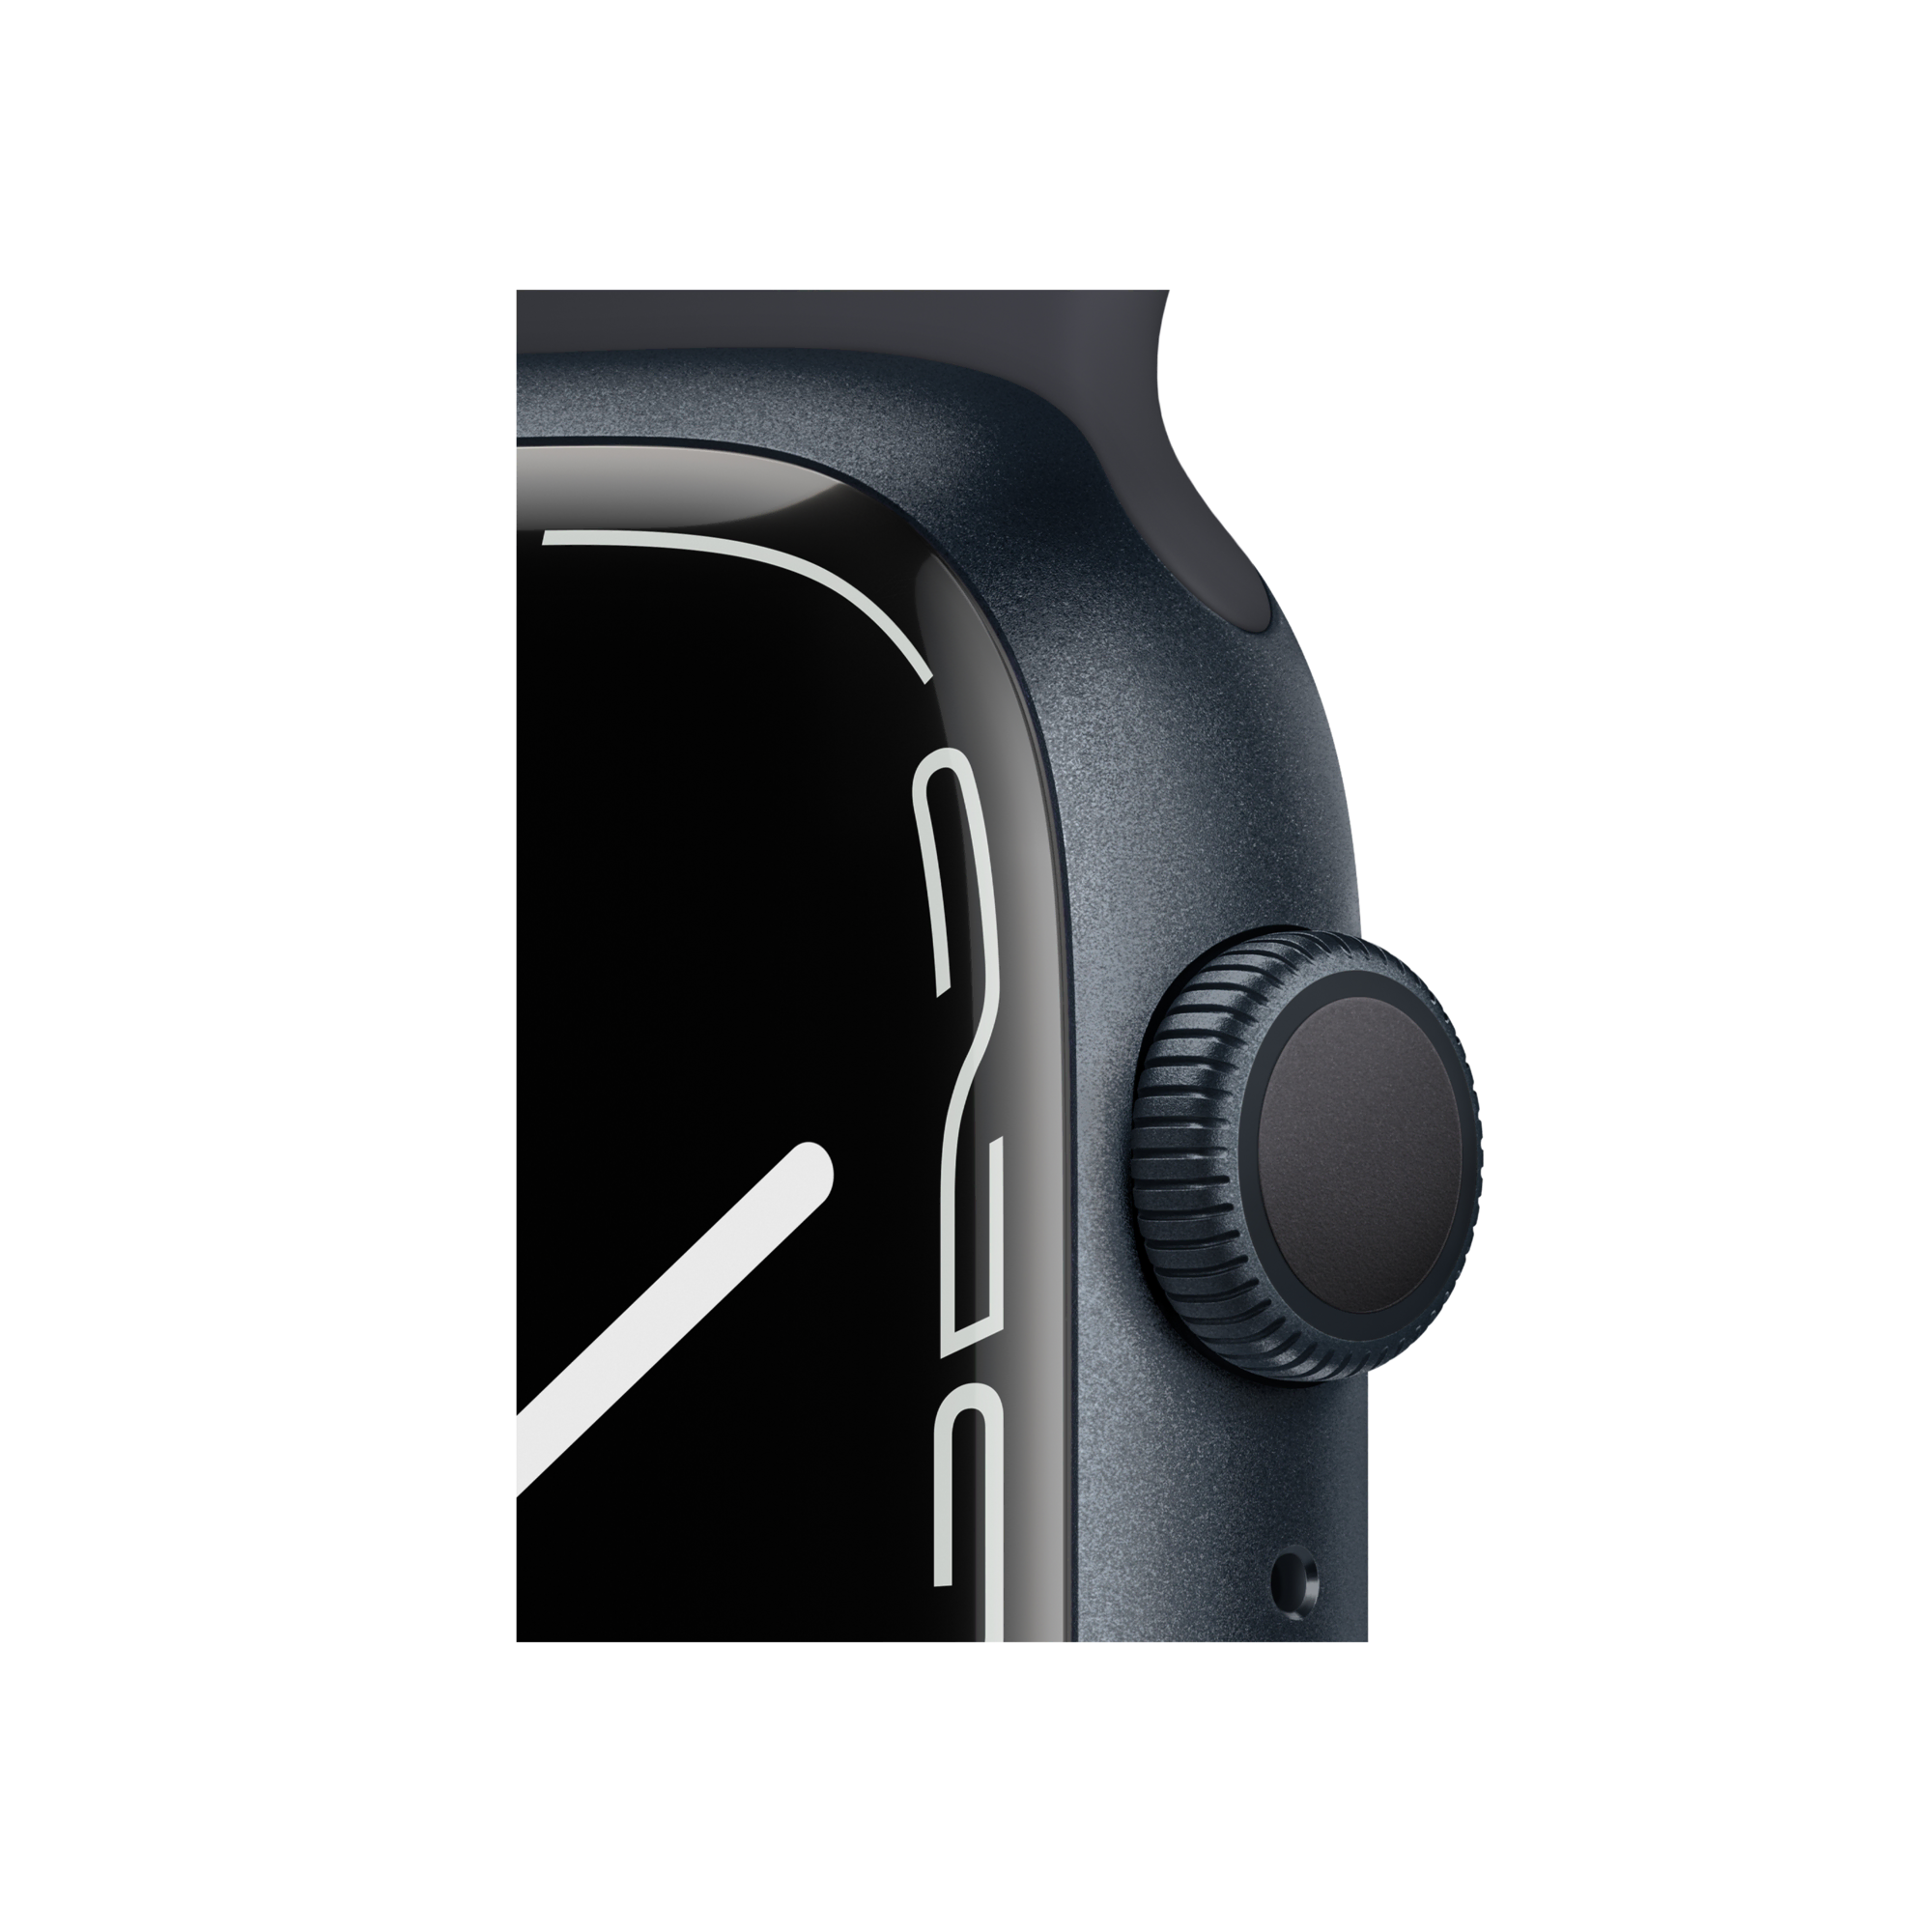 Apple Watch Series 7, 45mm Gece Yarısı Akıllı Saat